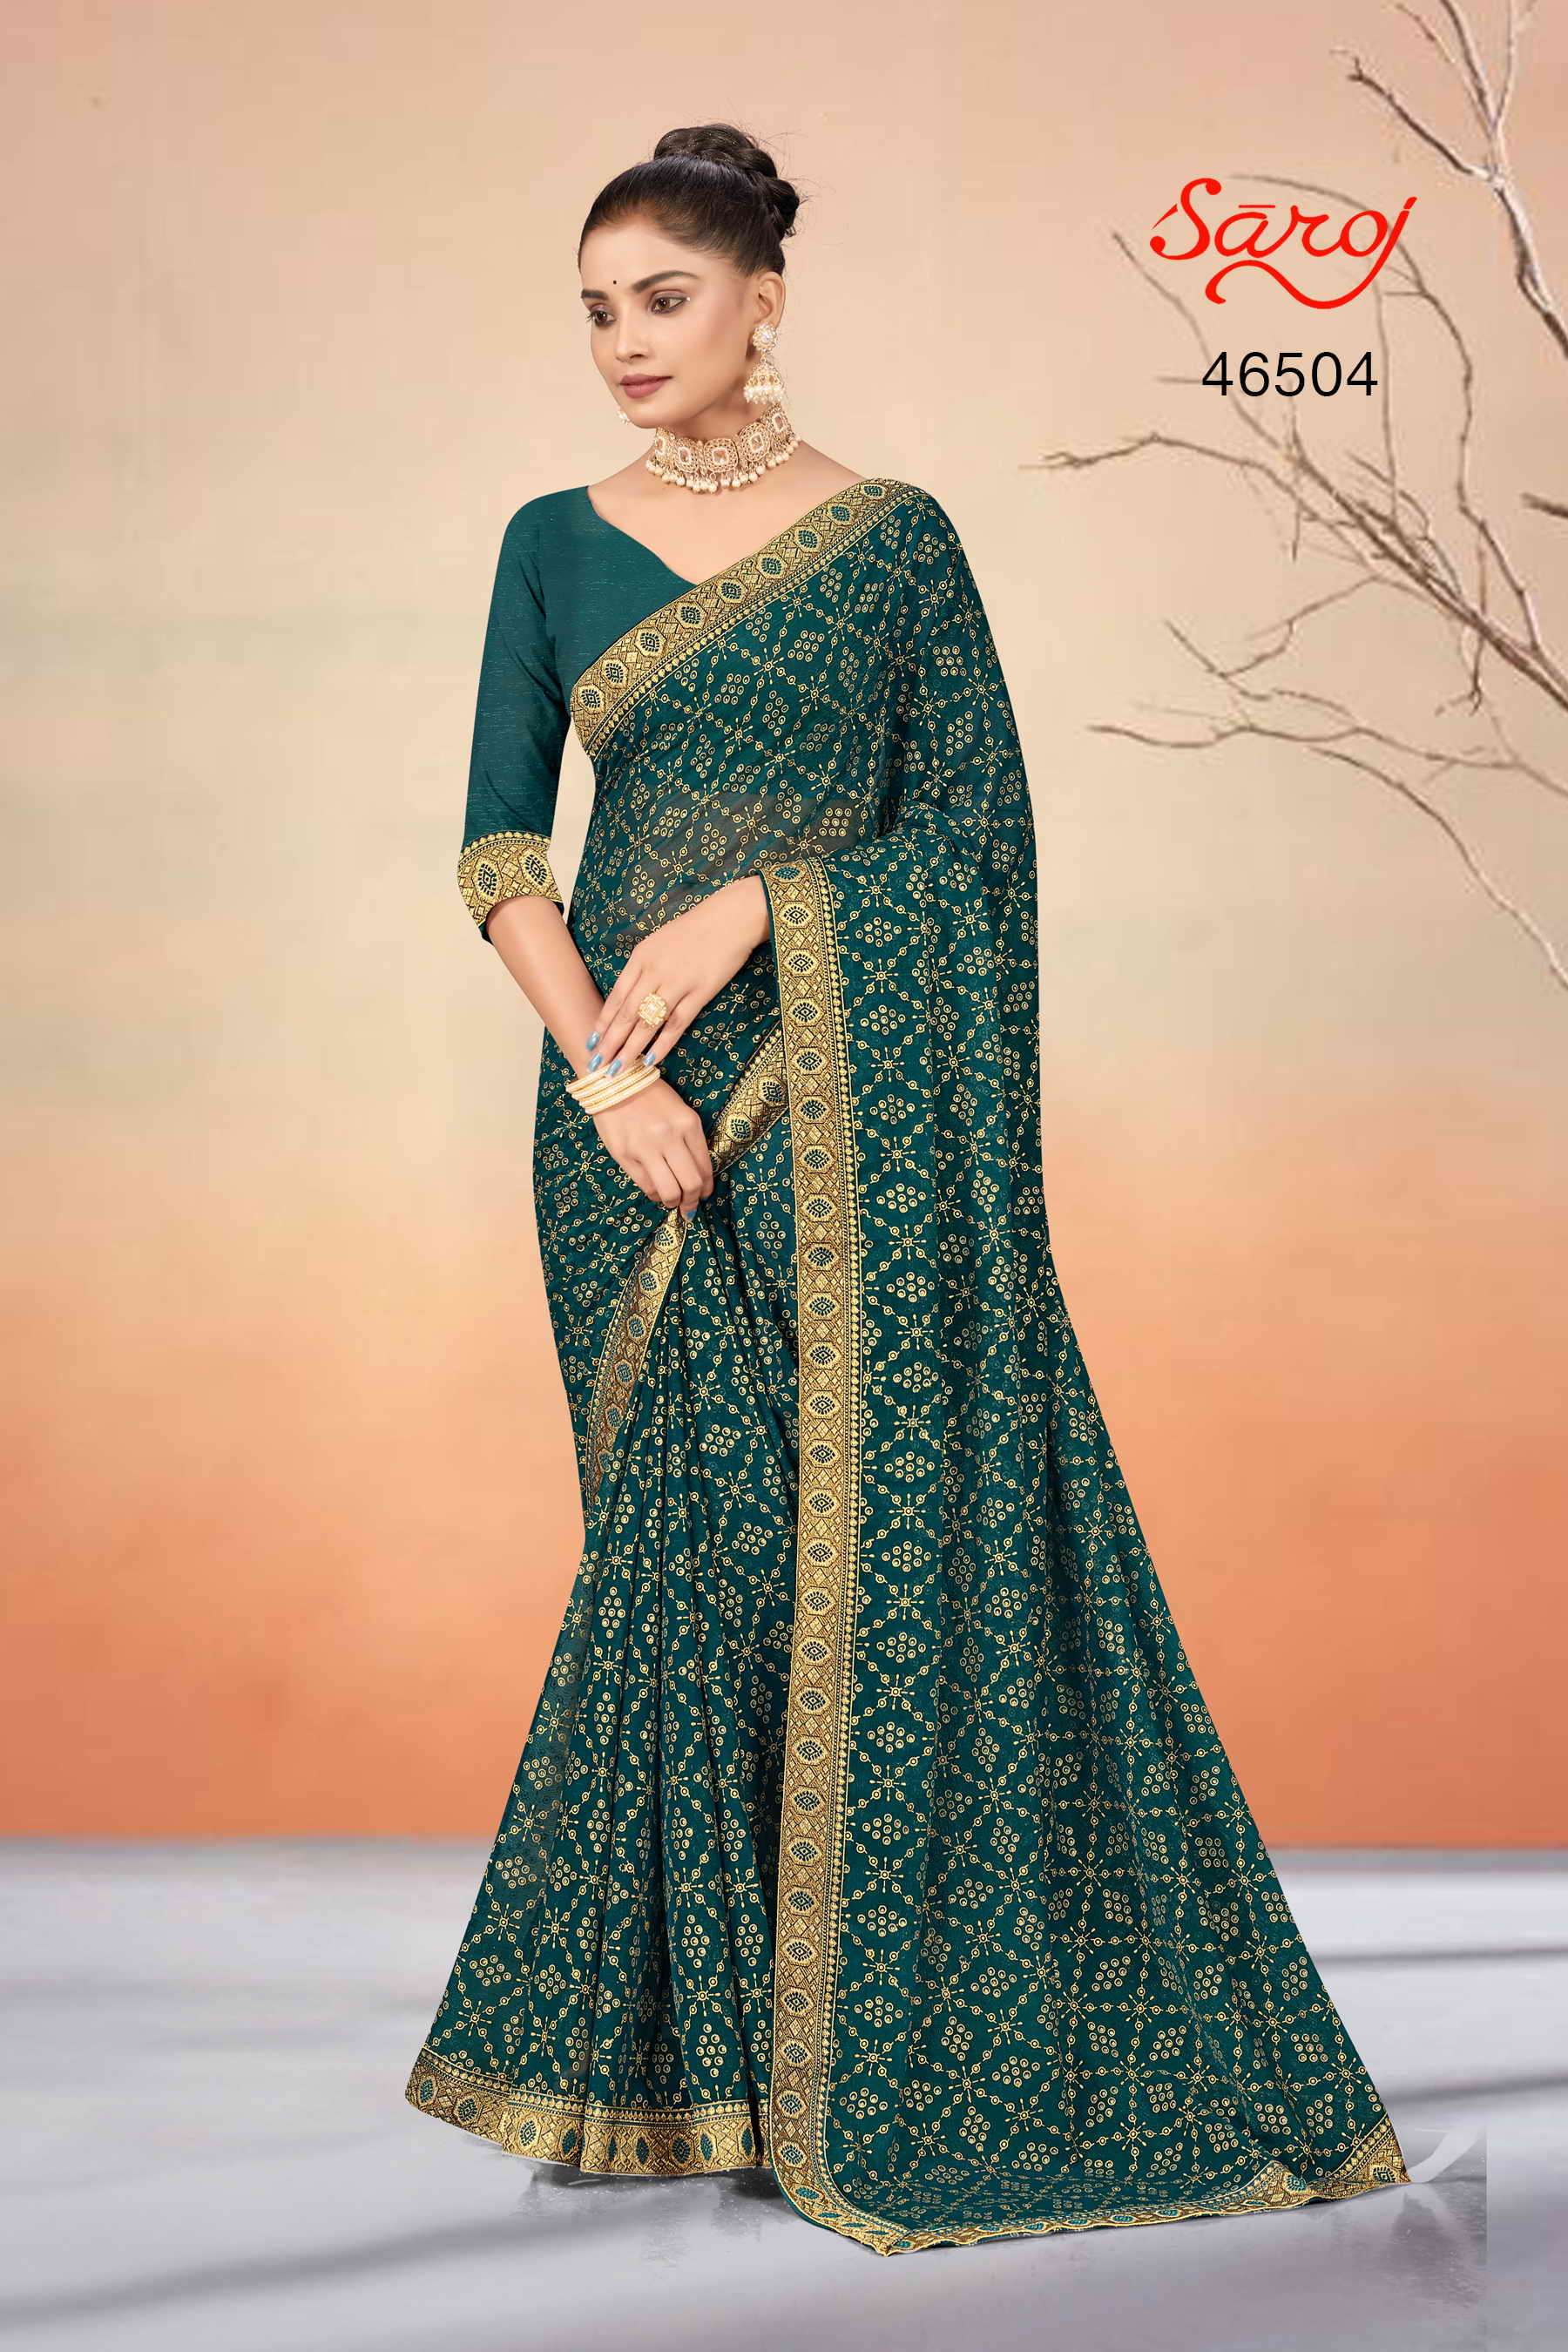 Saroj textile presents Vibha Designer sarees catalogue